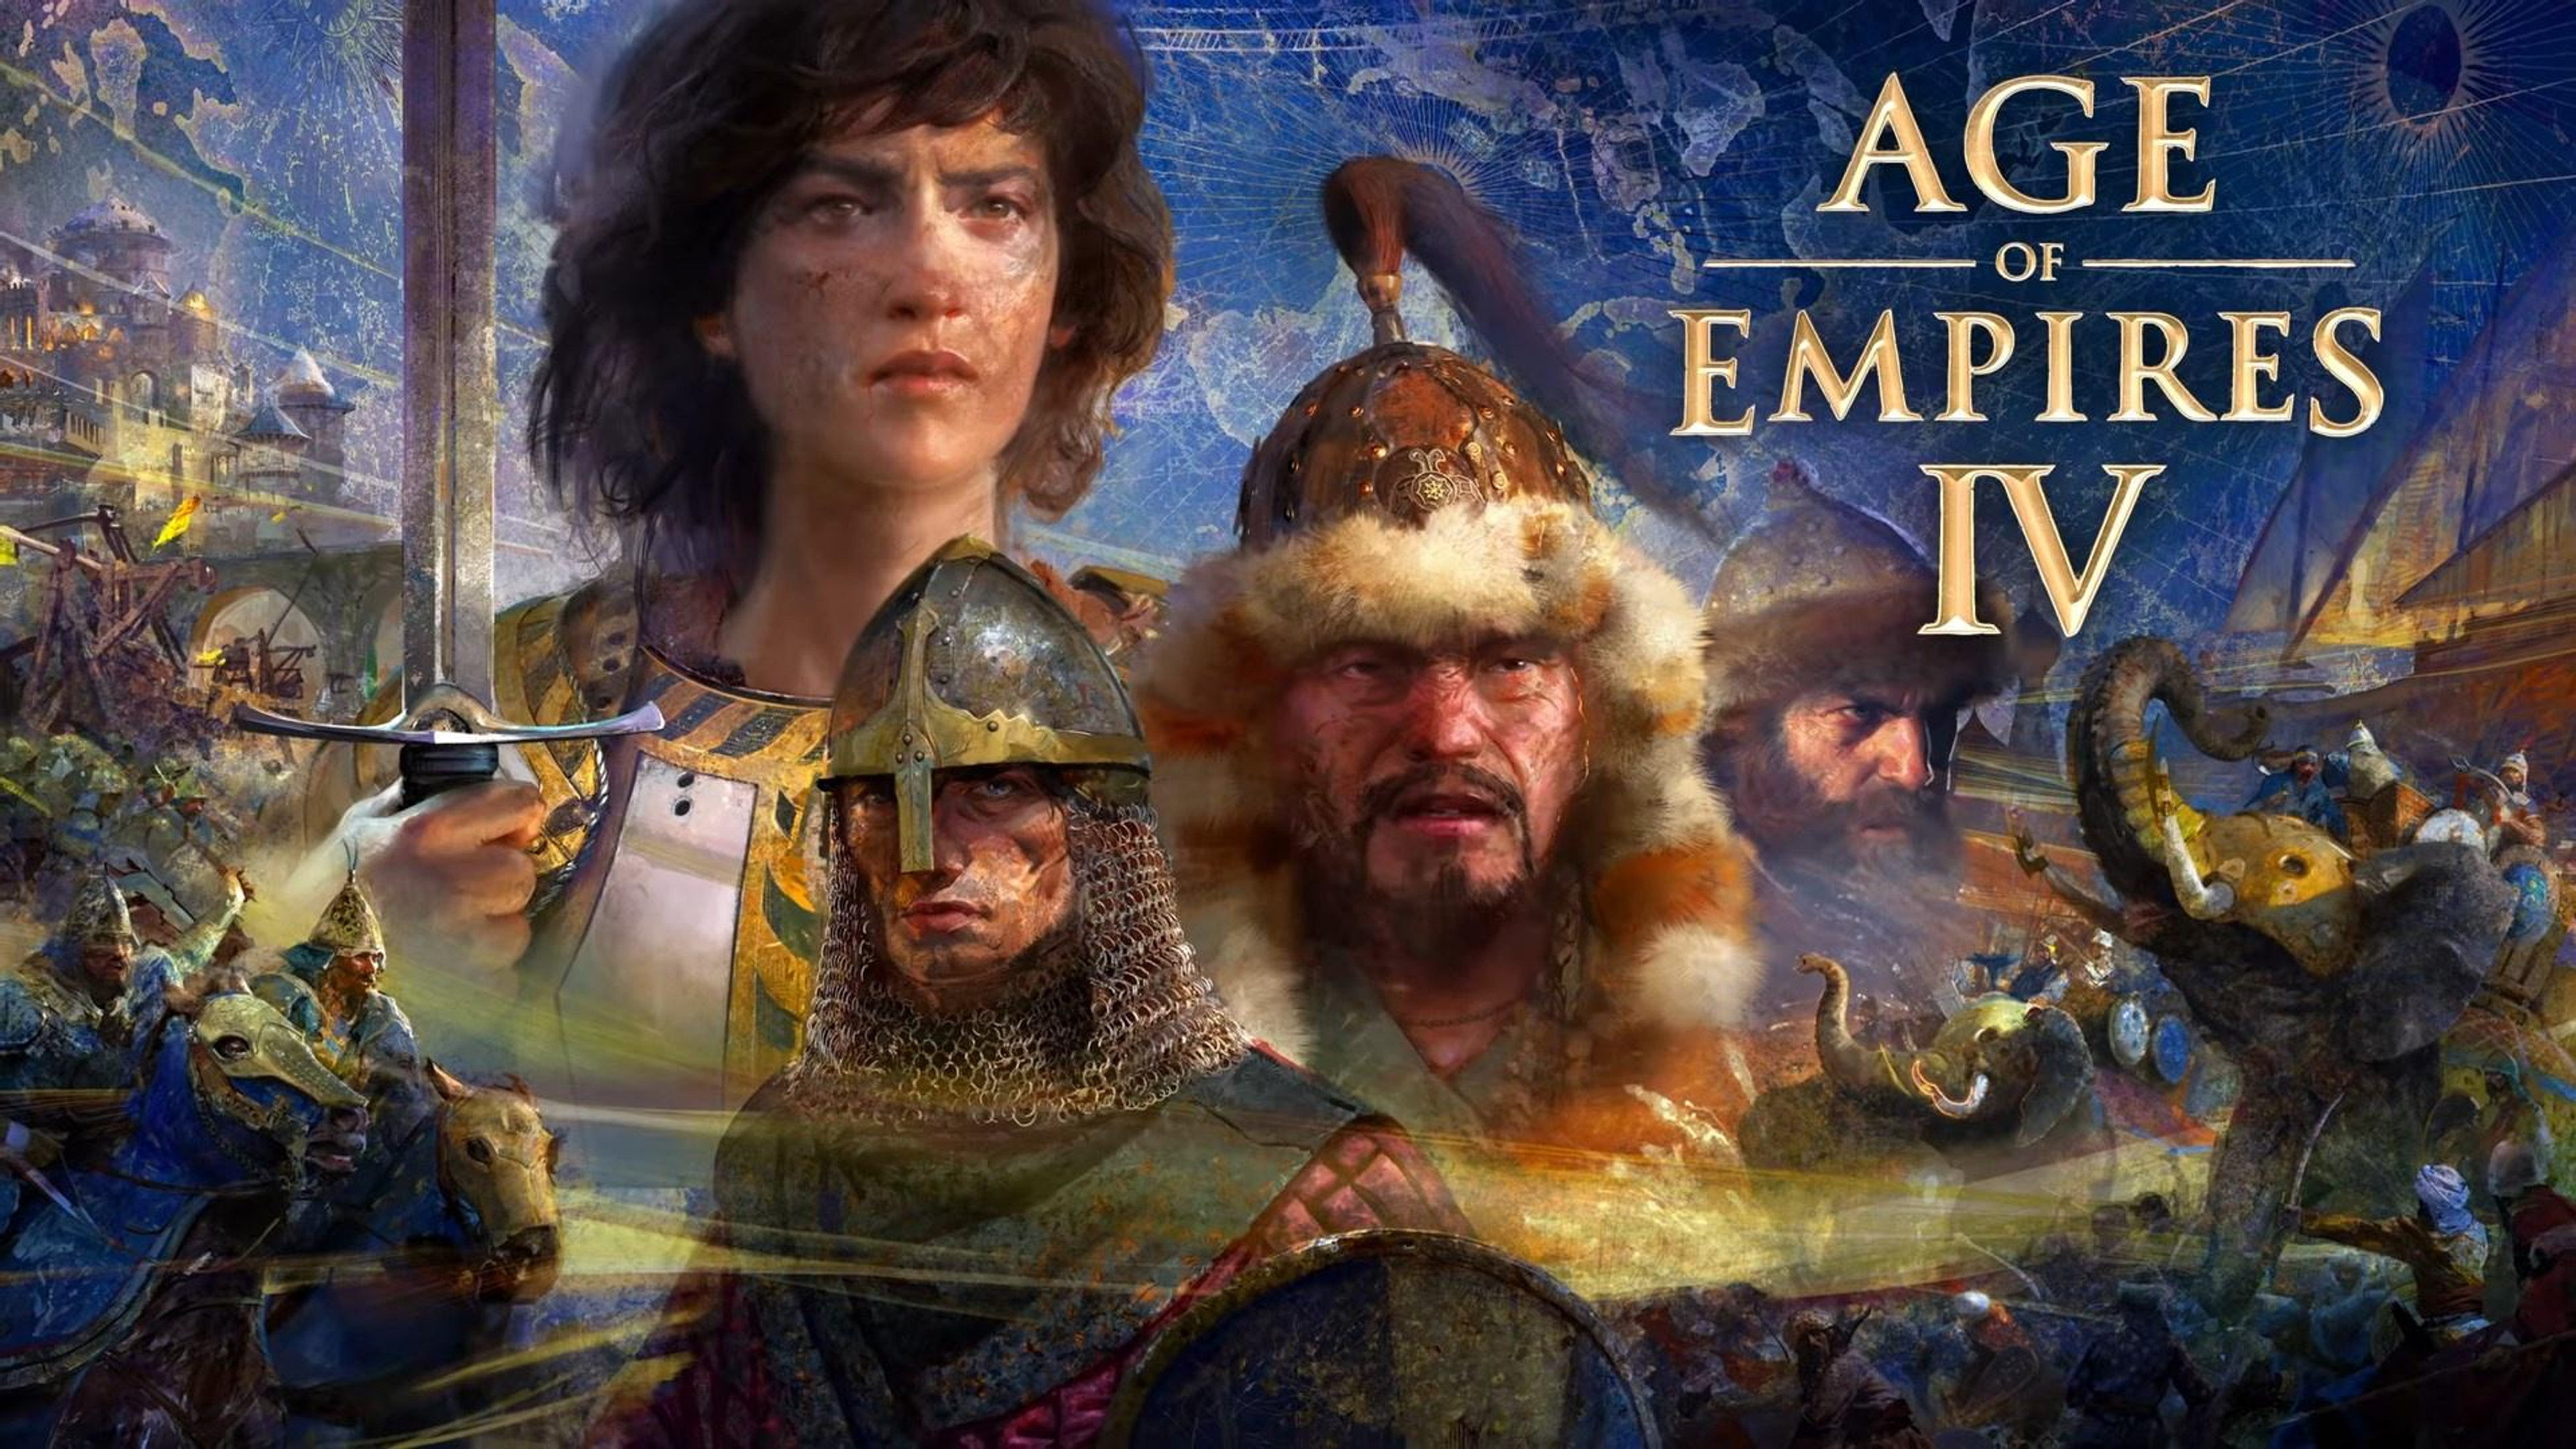 Comment participer à la beta fermée de Age of Empires 4 ?